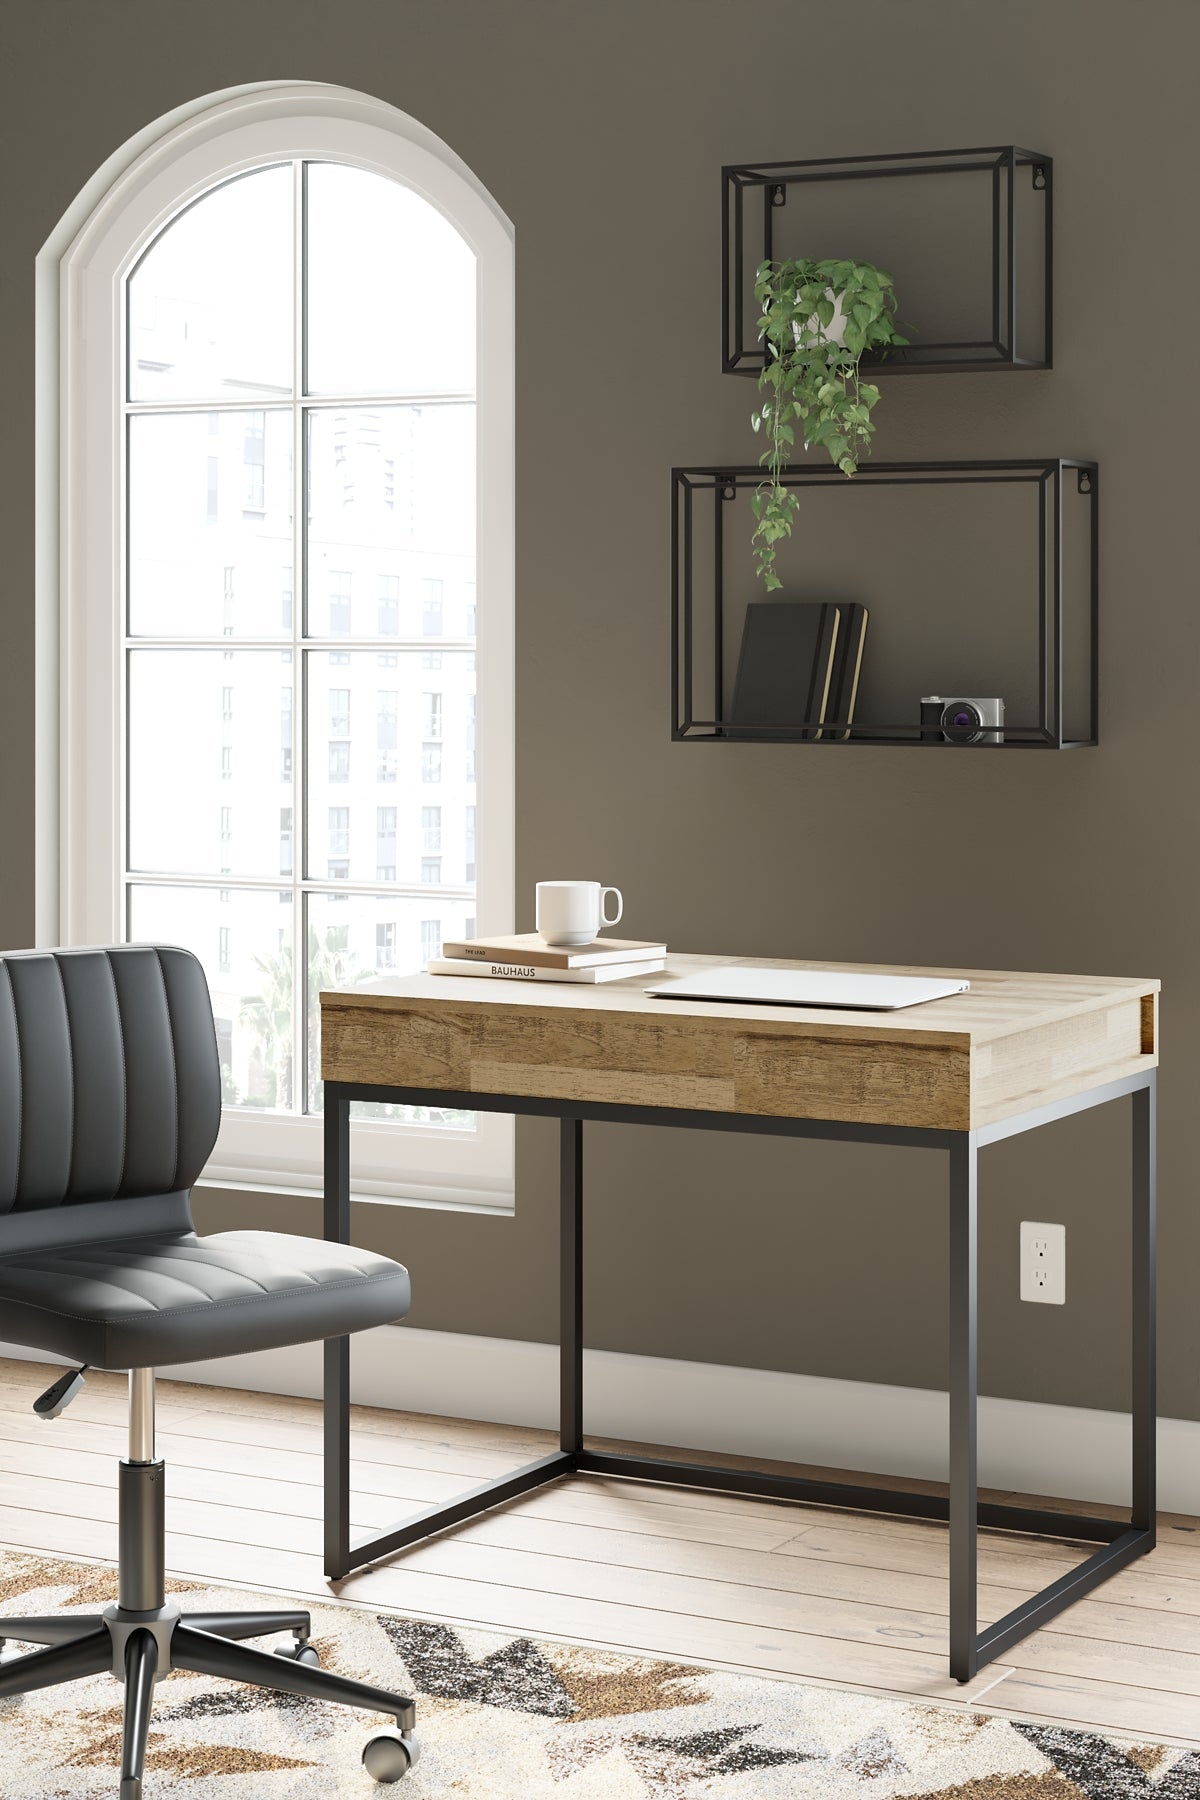 Gerdanet Home Office Lift Top Desk Smyrna Furniture Outlet